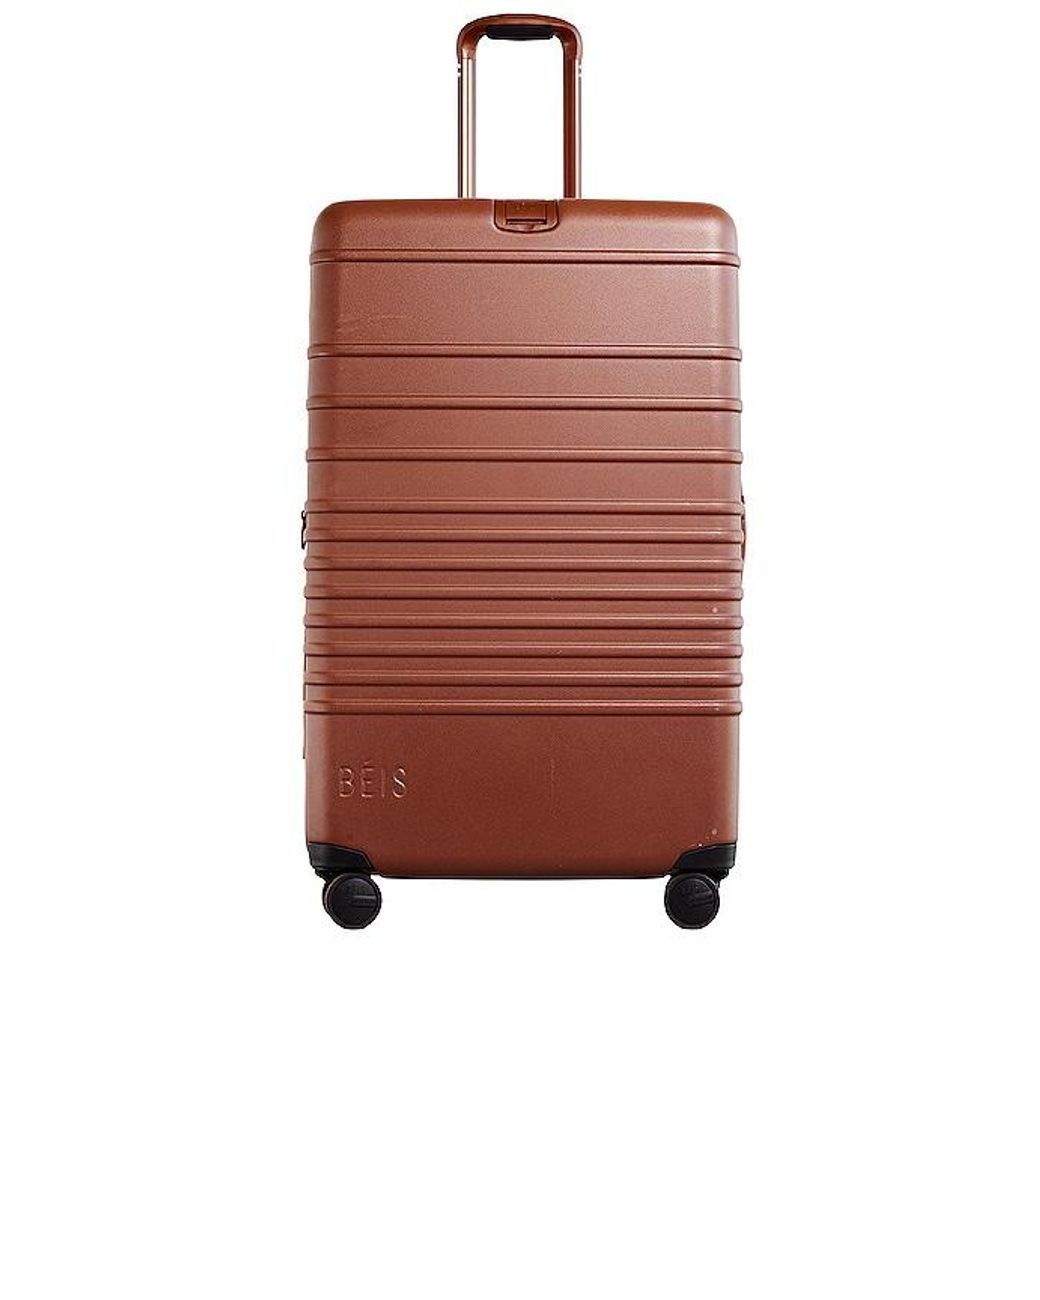 Beis Travel Luggage | Weekend travel bags, Weekender bag, Bags